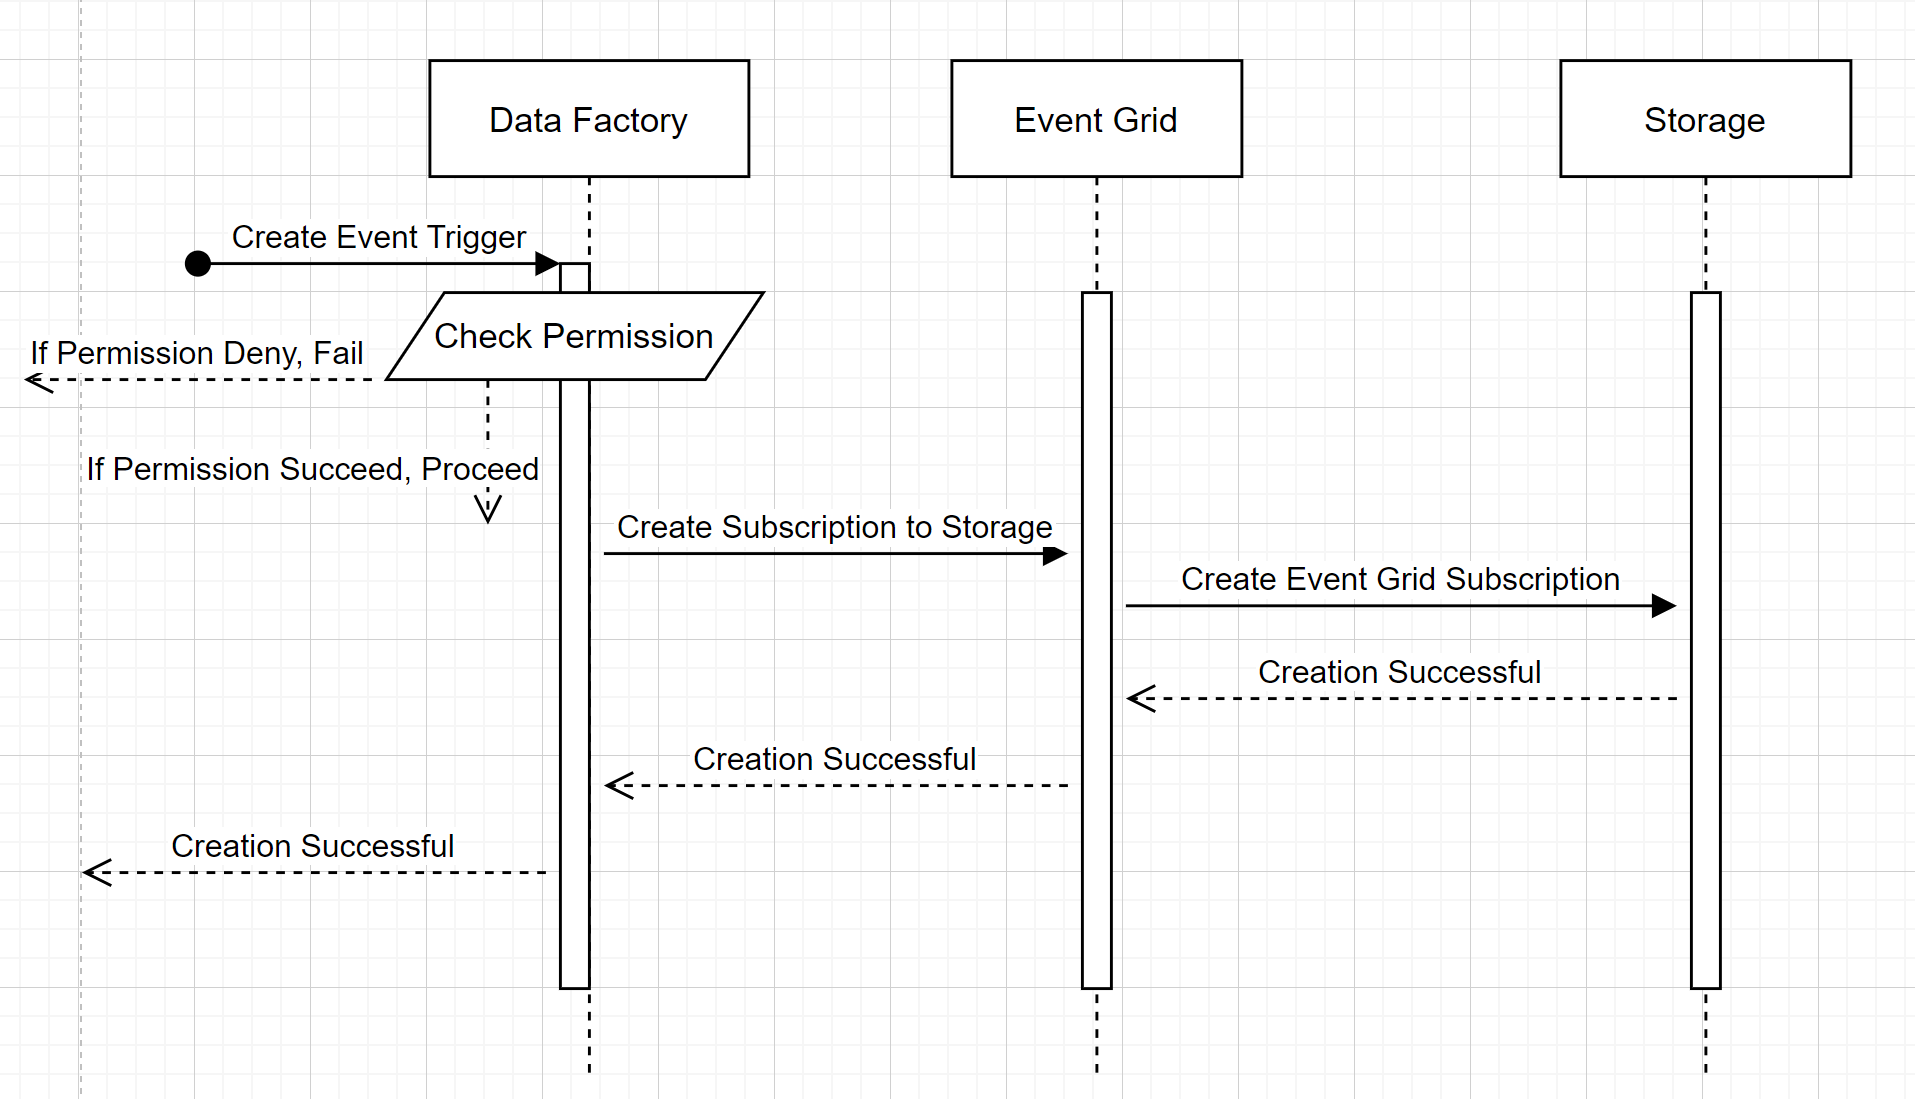 Workflow of storage event trigger creation.